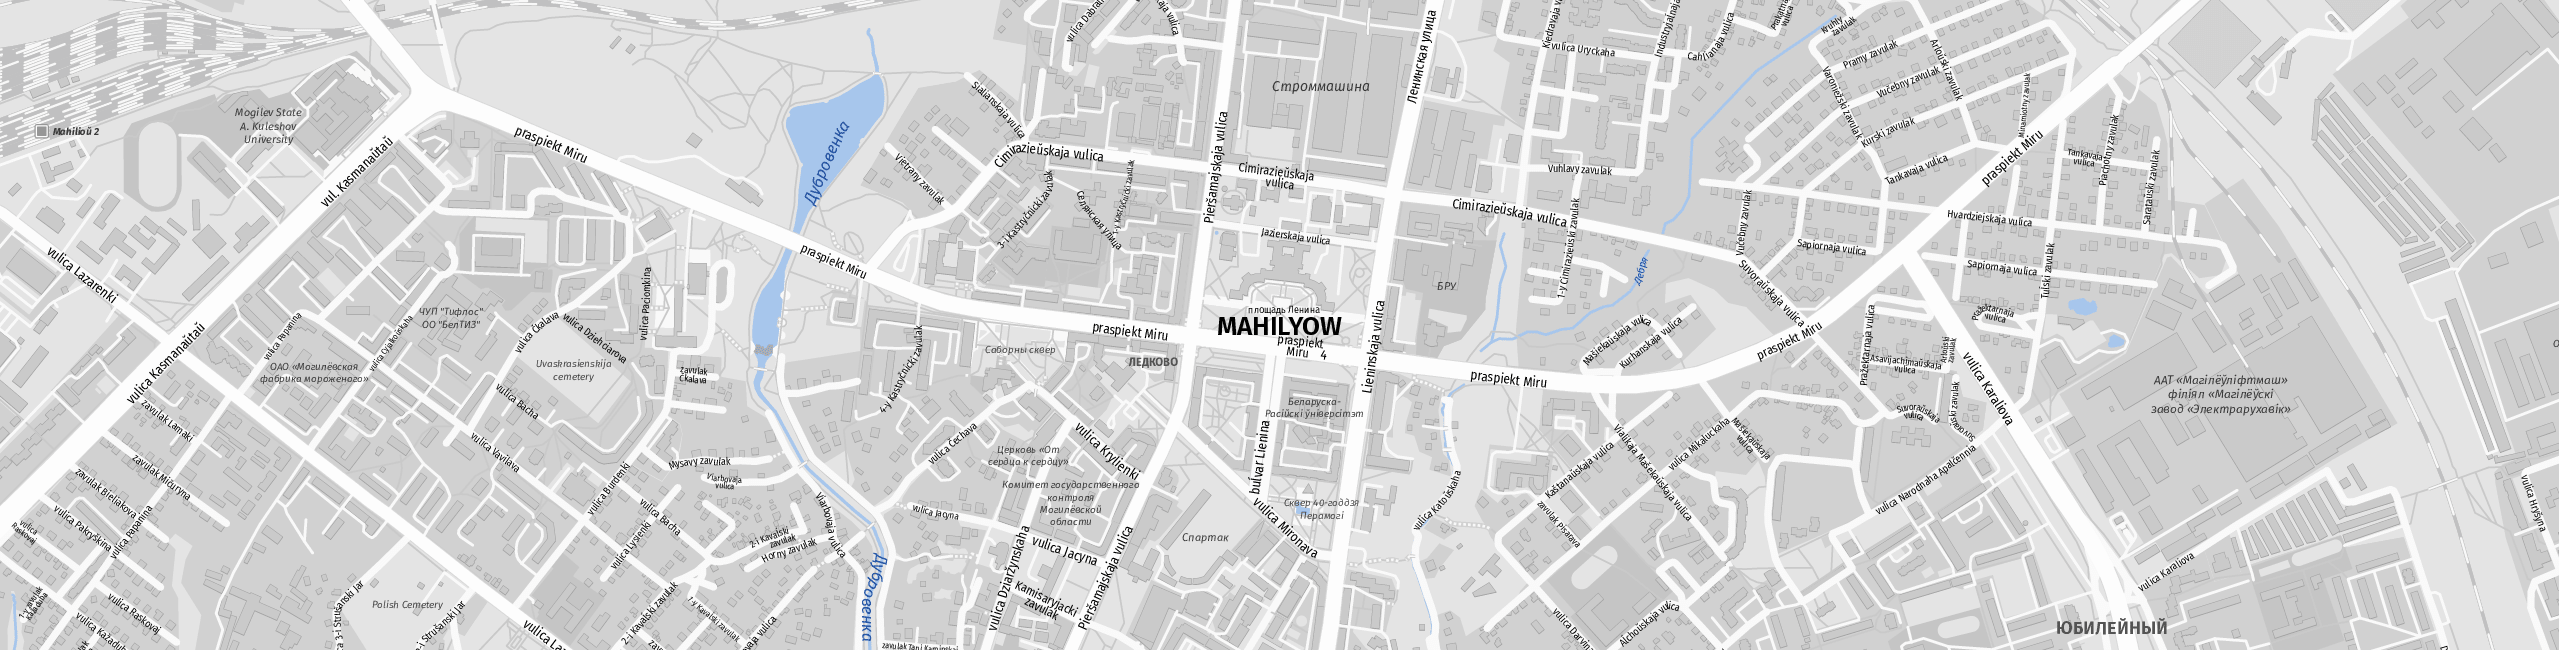 Stadtplan Mahilyow zum Downloaden.